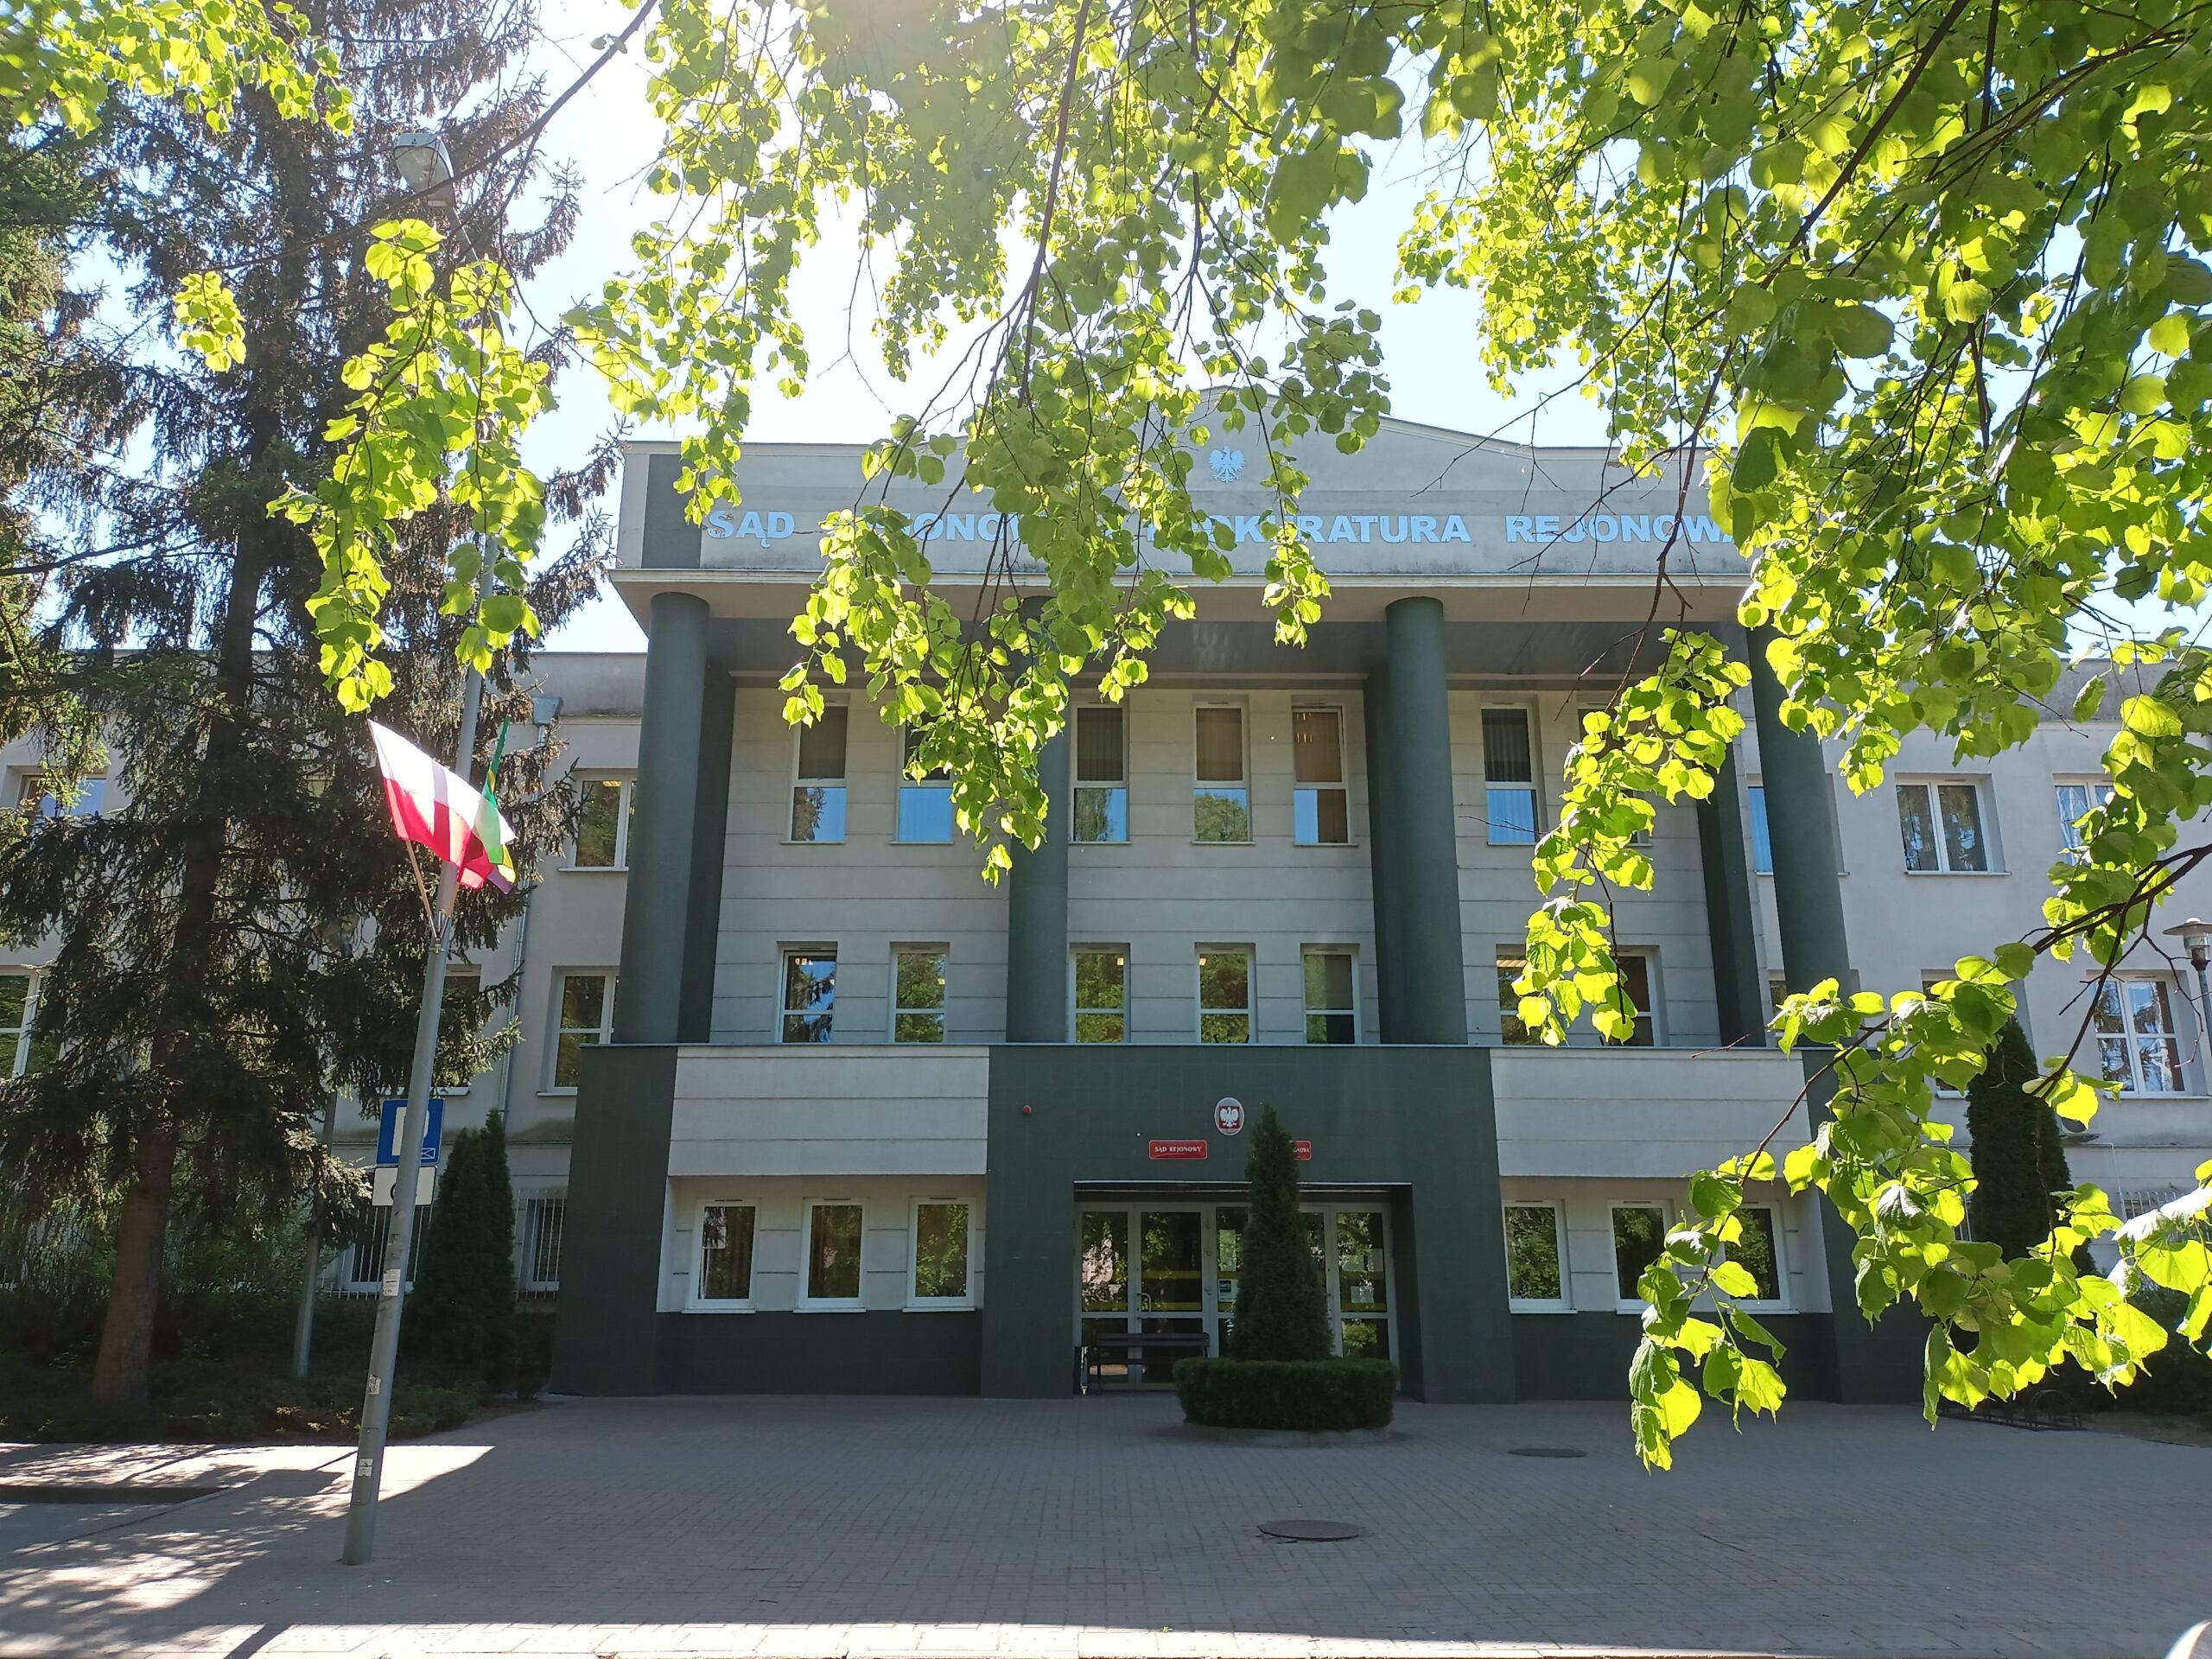 Budynek z napisem Sąd Rejonowy i Prokuratora Rejonowa